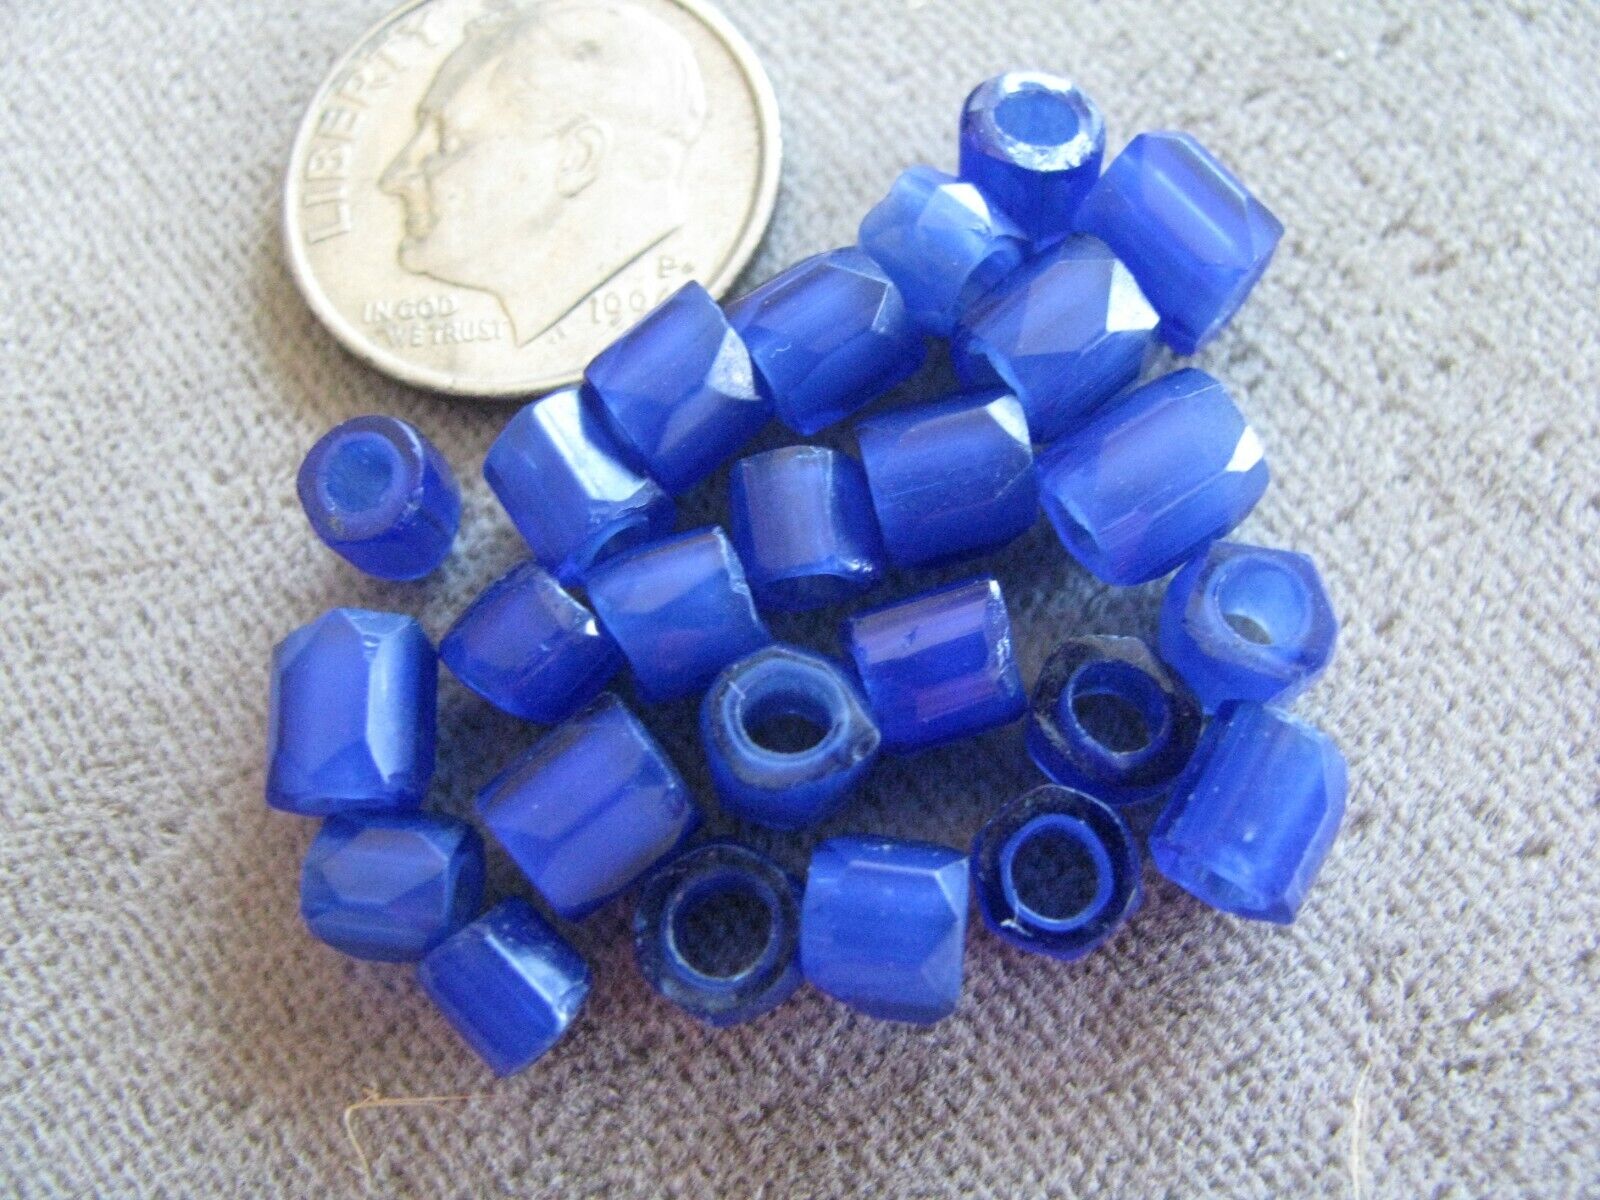 Lot of 25 Antique Czech Glass African Trade Beads Russian Blues 5mm Без бренда - фотография #2